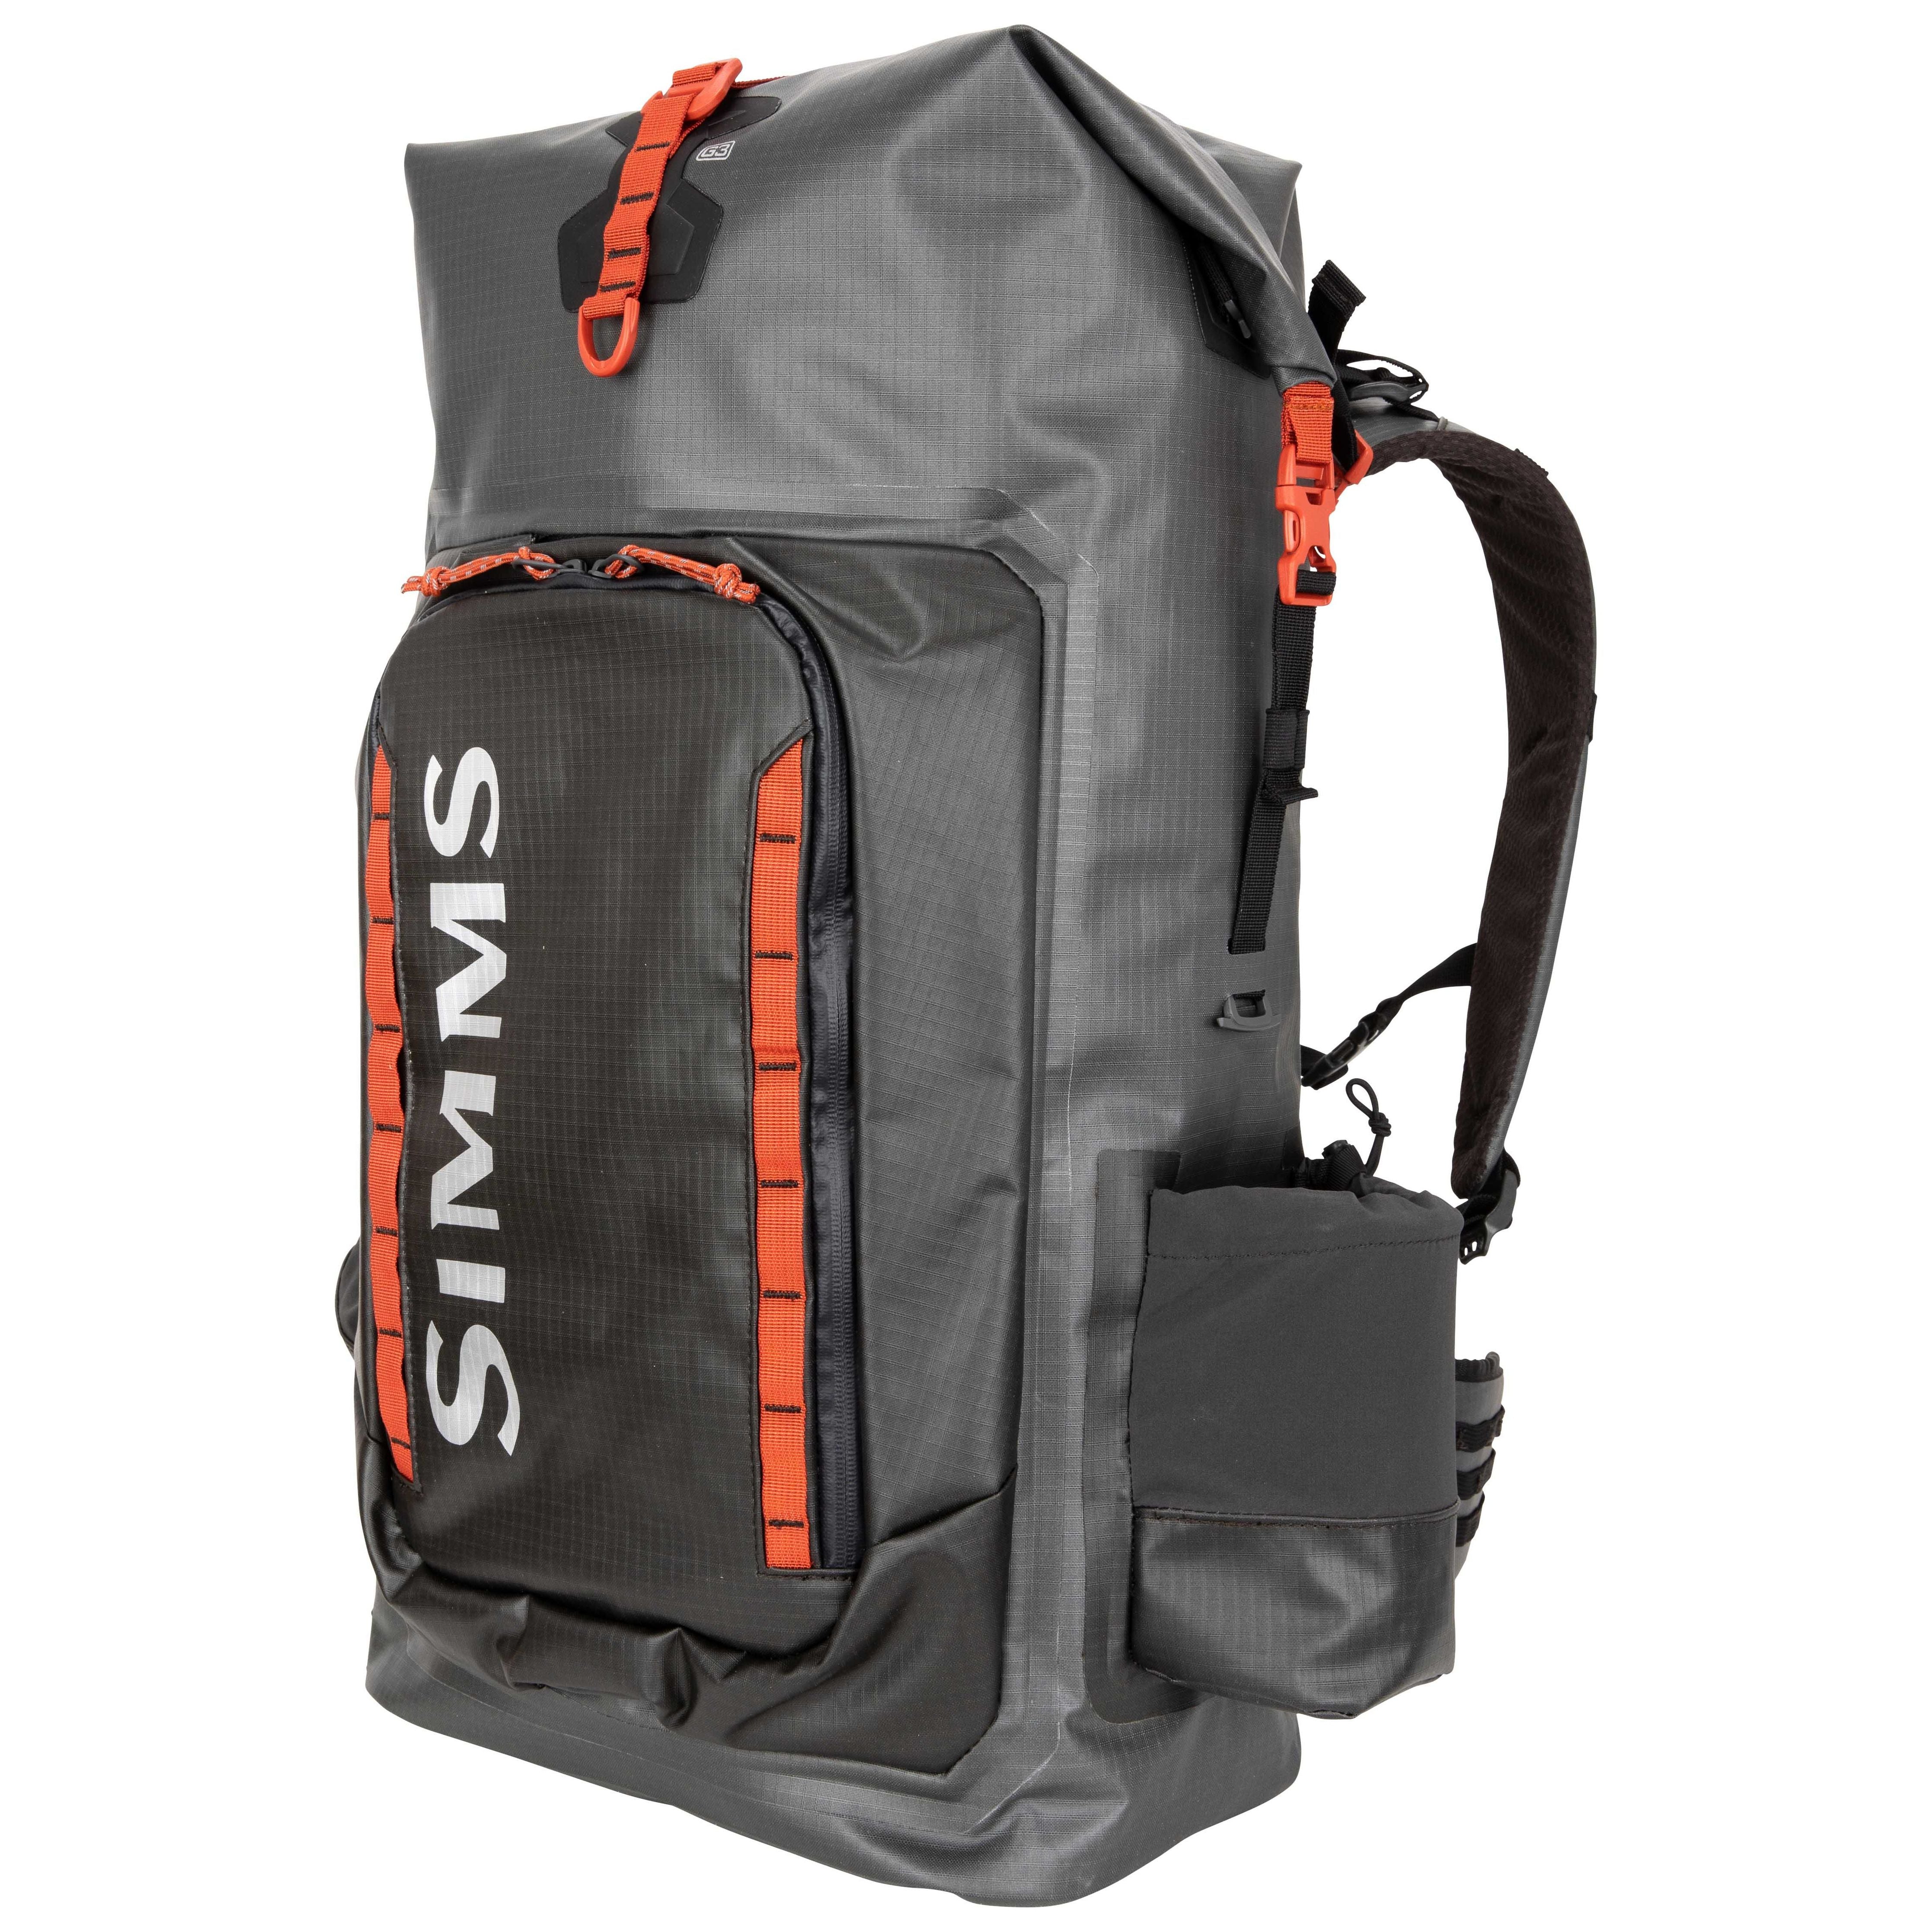 Simms Dry Creek Rolltop Backpack Simms Orange